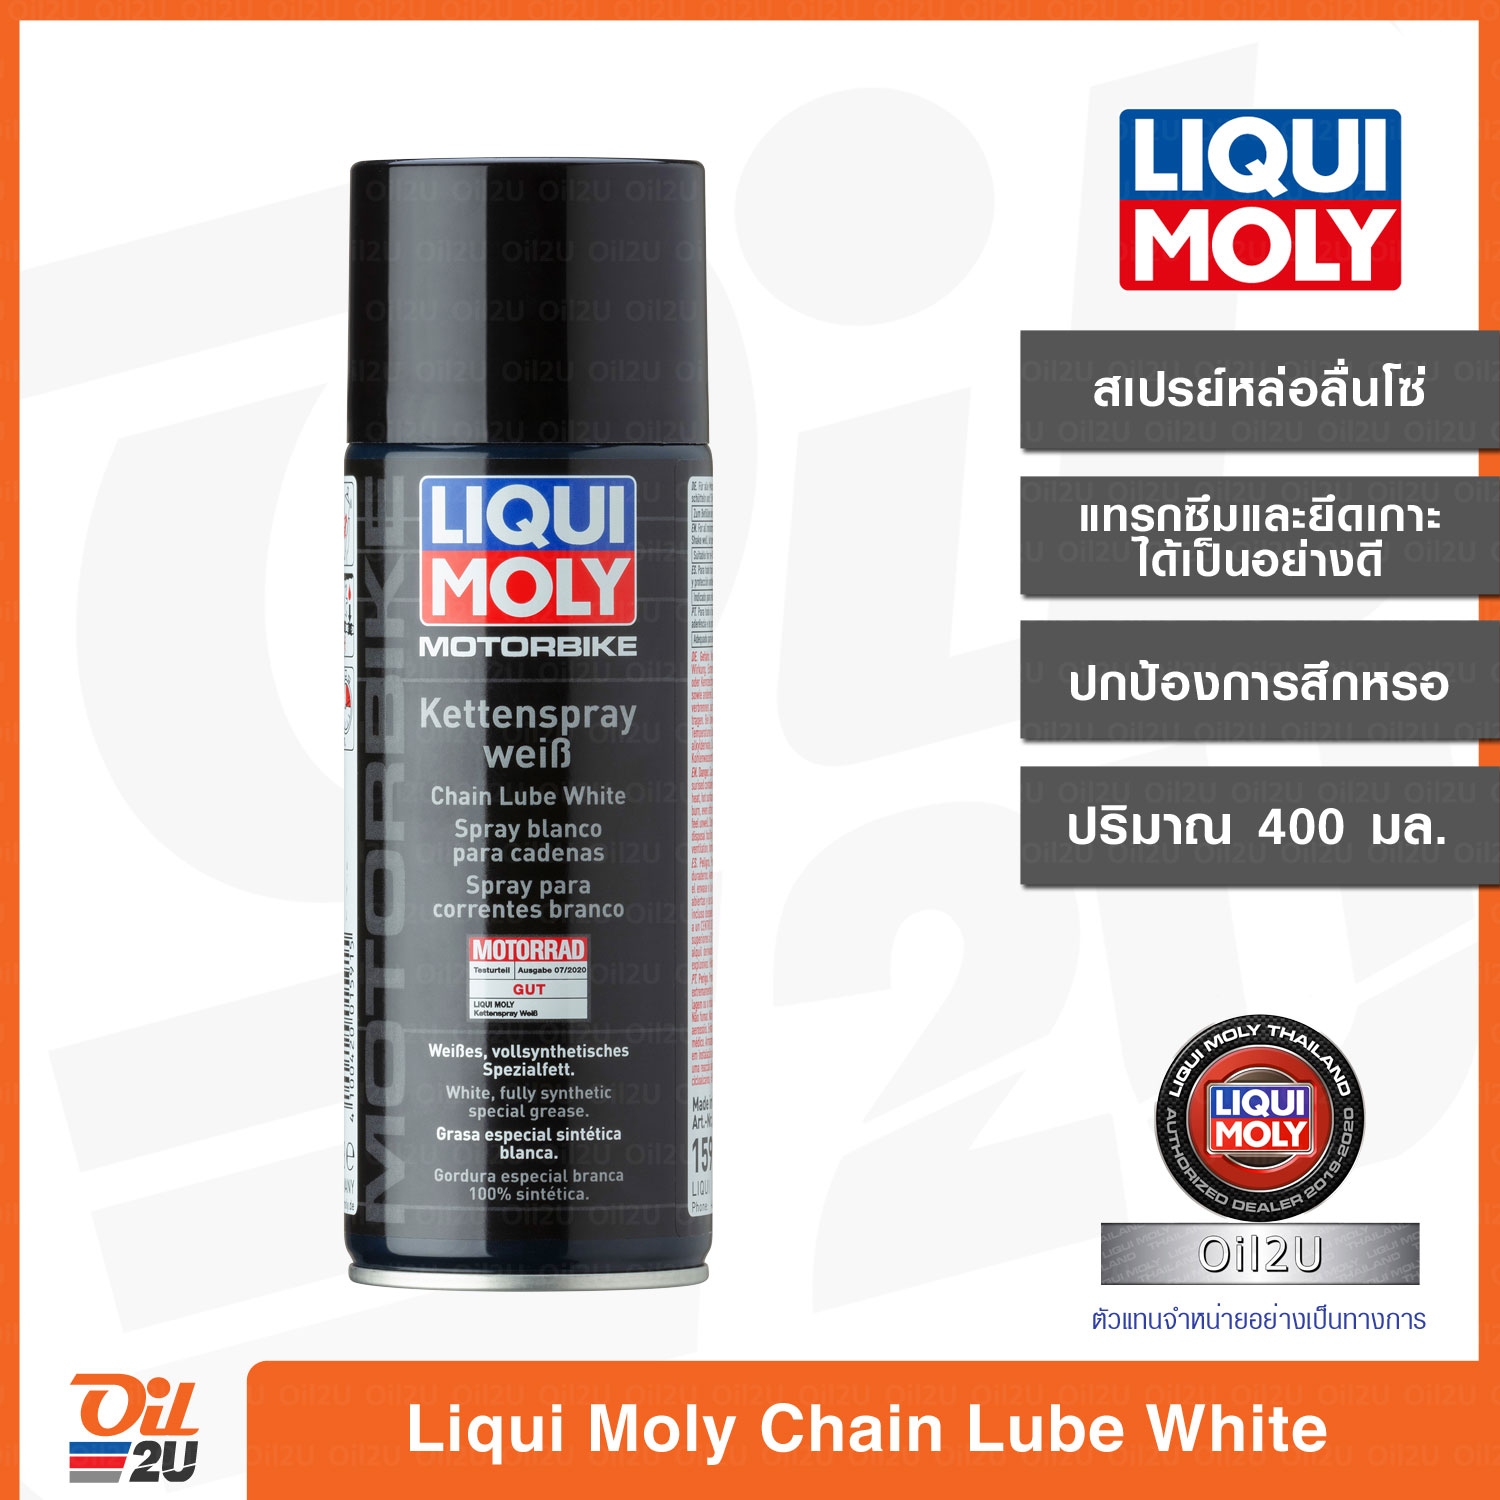 สเปรย์หล่อลื่นโซ่ จารบีขาว Liqui Moly Motorbike Chain Lube White ขนาด 400 ml. | Oil2U